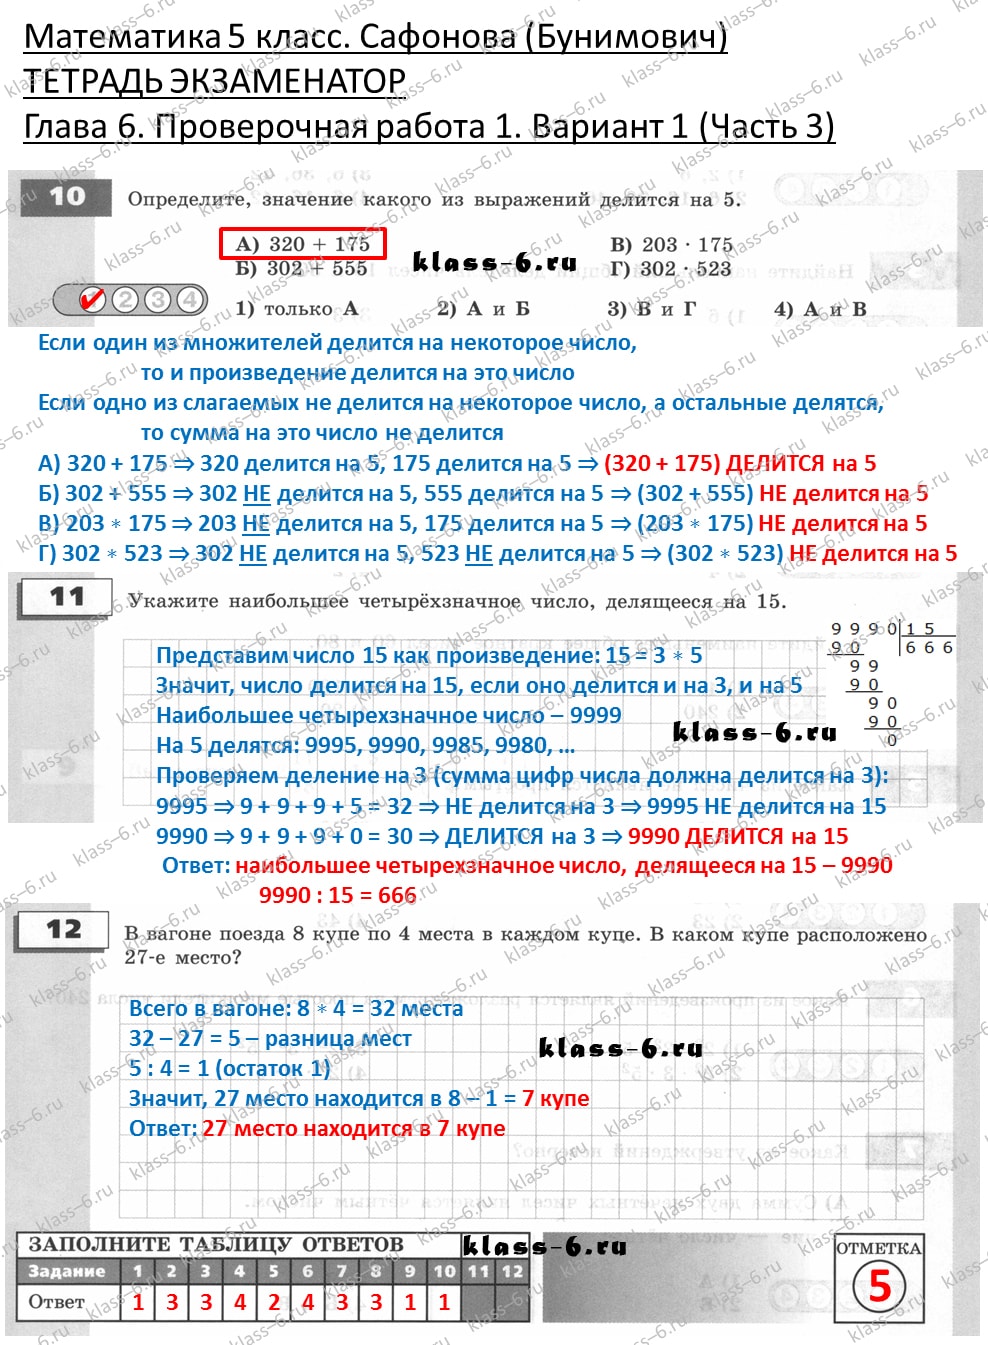 решебник и гдз по математике тетрадь экзаменатор Сафонова, Бунимович 5 класс глава 6 контрольная работа 1 вариант 1 (3)